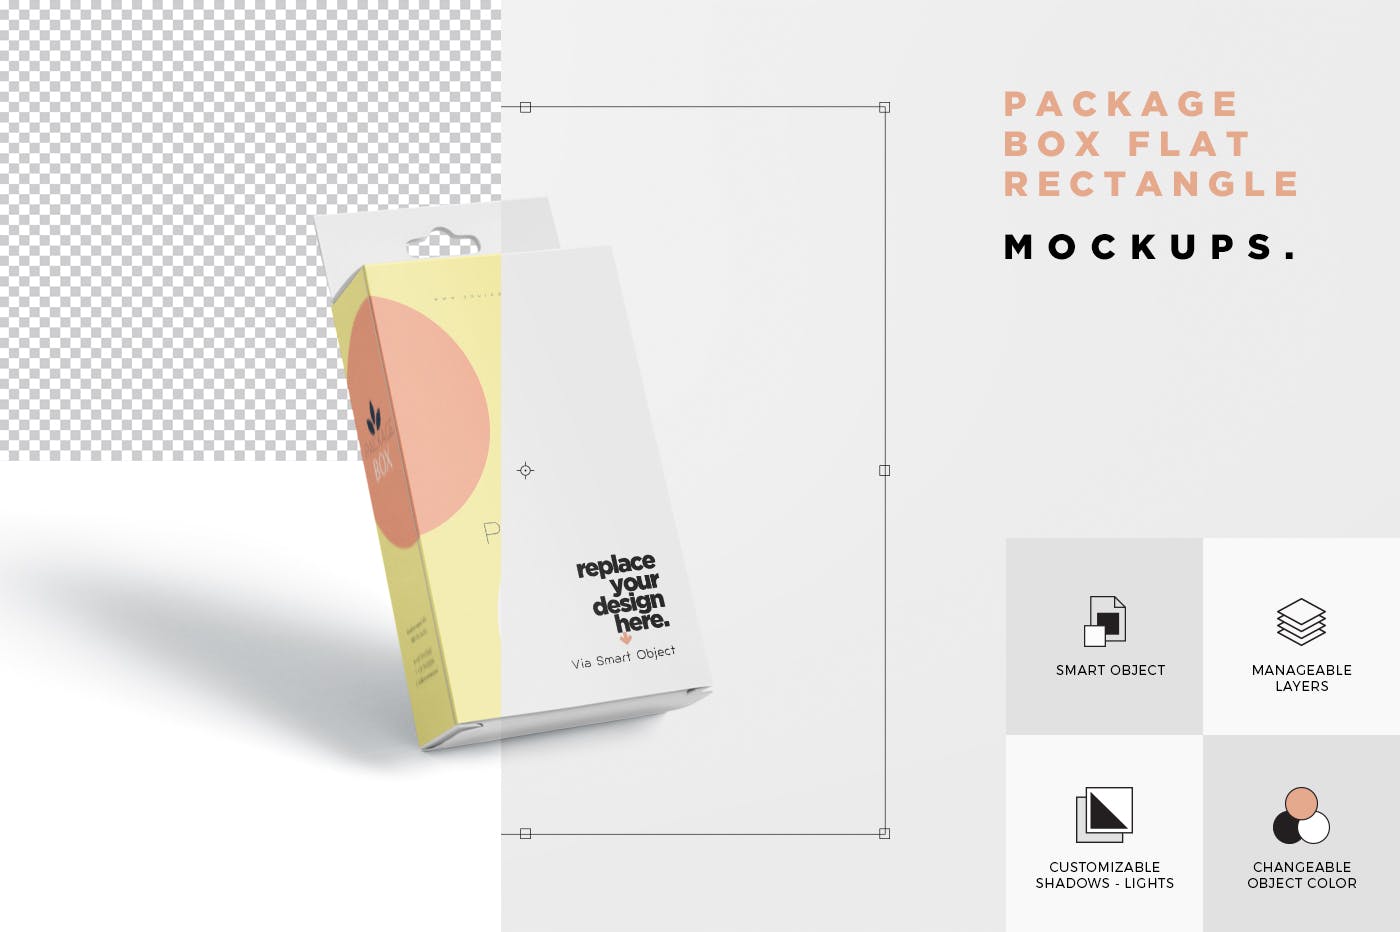 带挂耳设计扁平矩形产品包装盒效果图素材中国精选 Package Box Mockup Set- Flat Rectangle with Hanger插图(7)